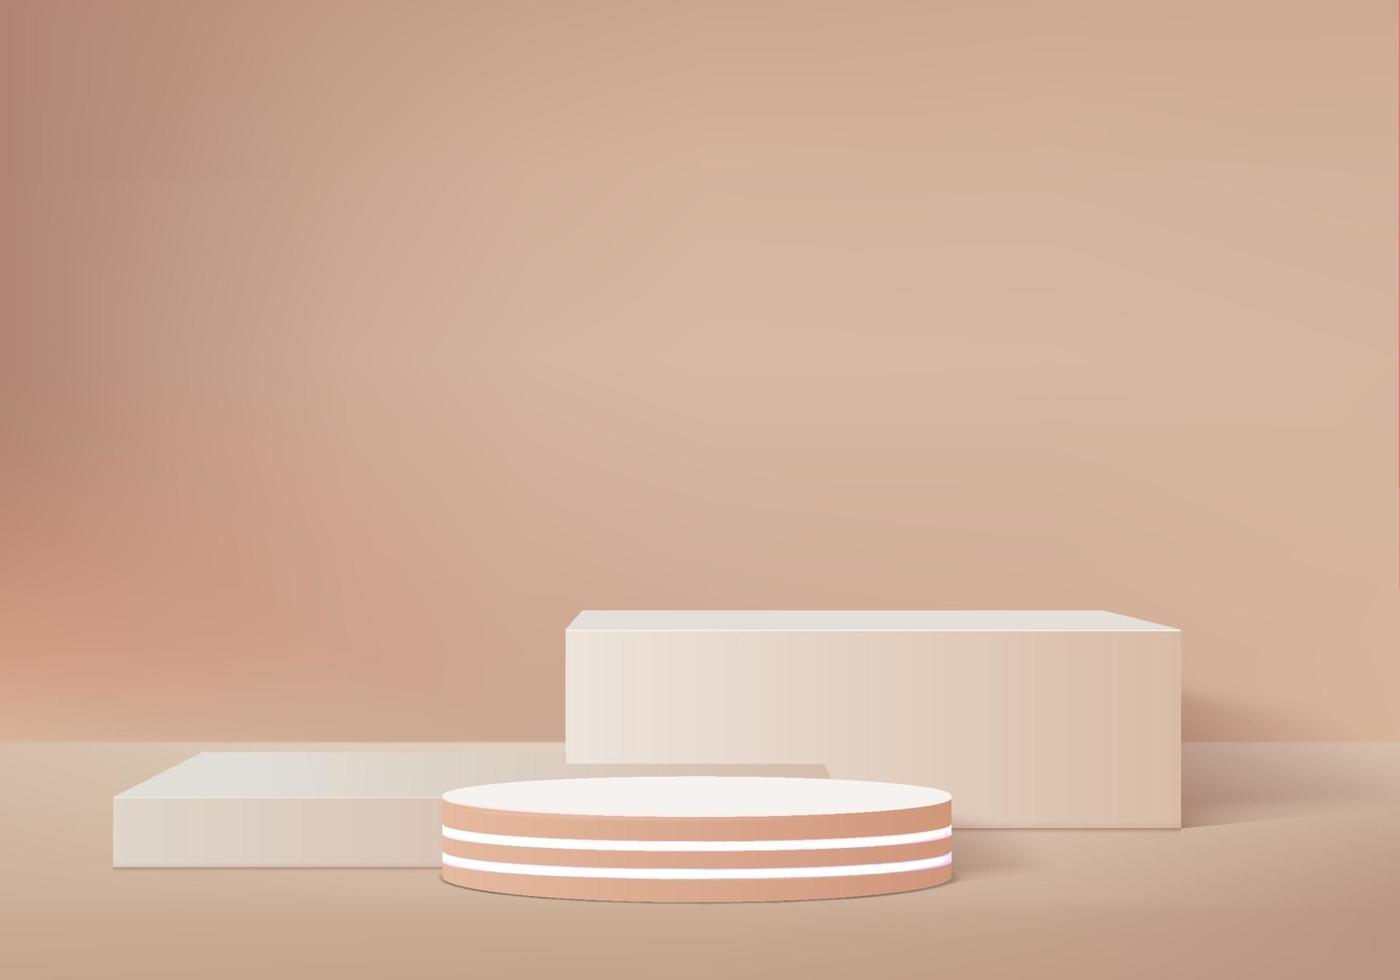 Zylinder abstrakte minimale Szene mit geometrischer Plattform Sommer Hintergrund Vektor 3D-Rendering mit Podest stehen, um kosmetische Produkte Bühne Schaufenster auf Sockel moderne 3D-Studio beige Pastell zu zeigen